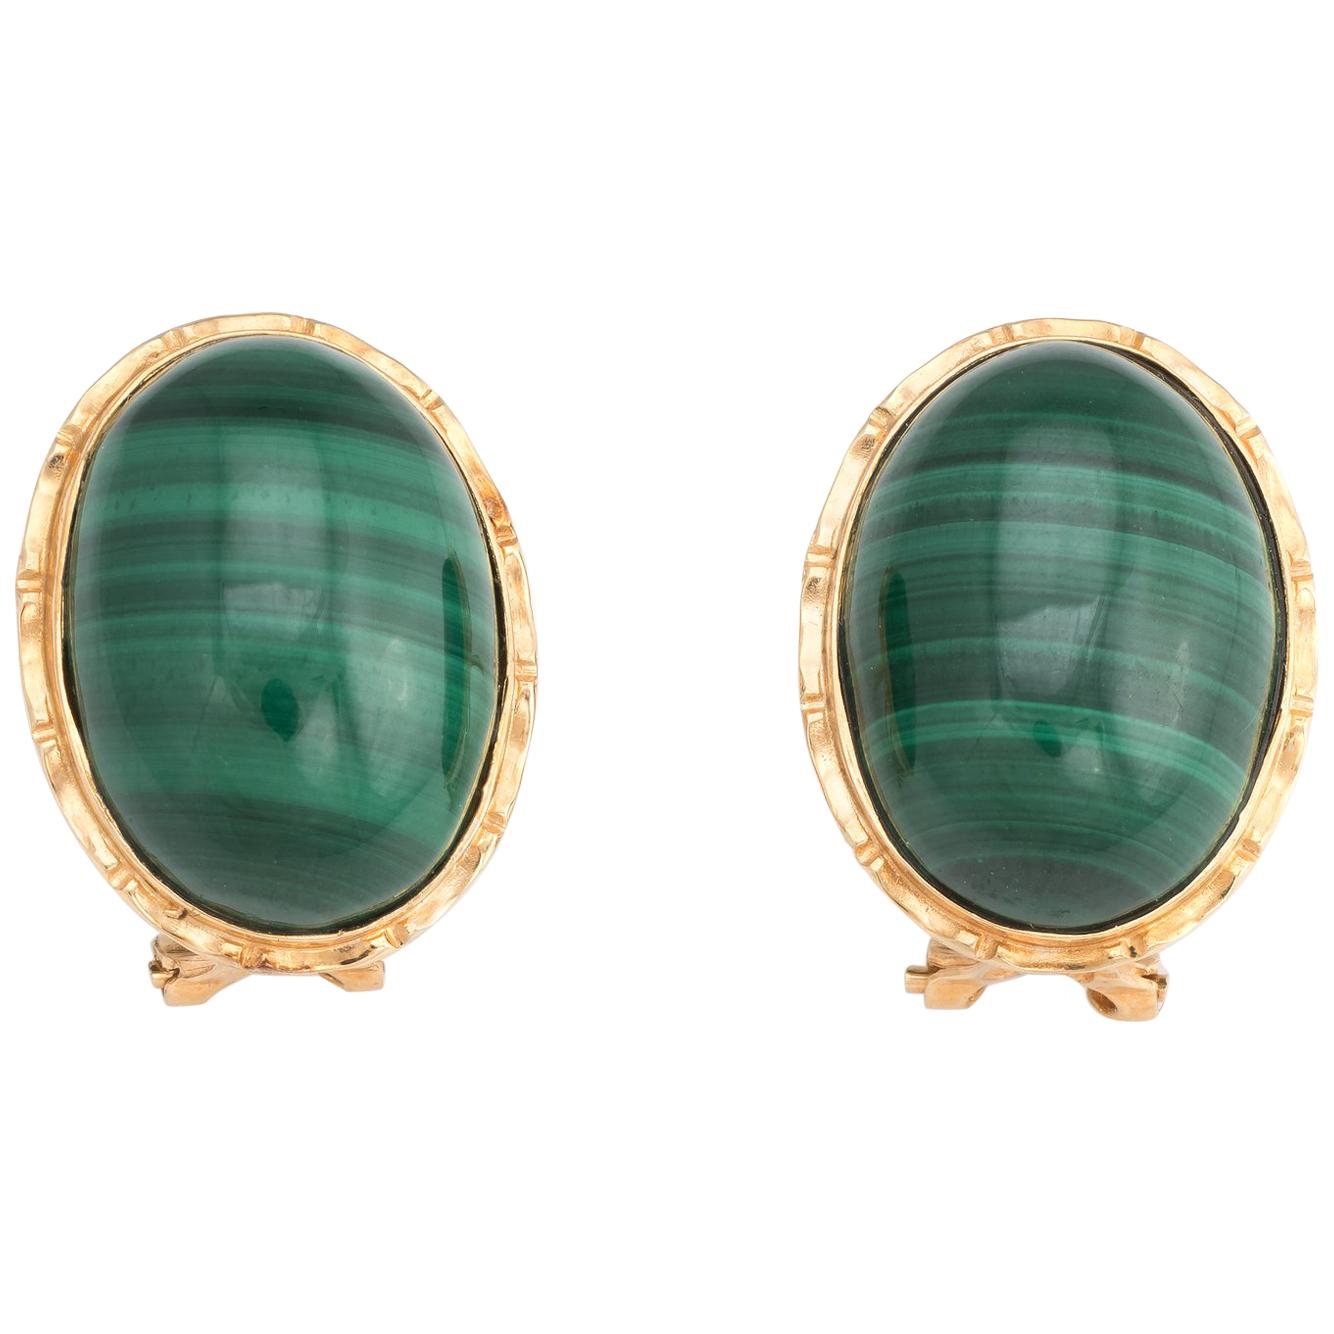 Vintage Malachite Earrings 14 Karat Yellow Gold Oval Estate Fine Jewelry Green